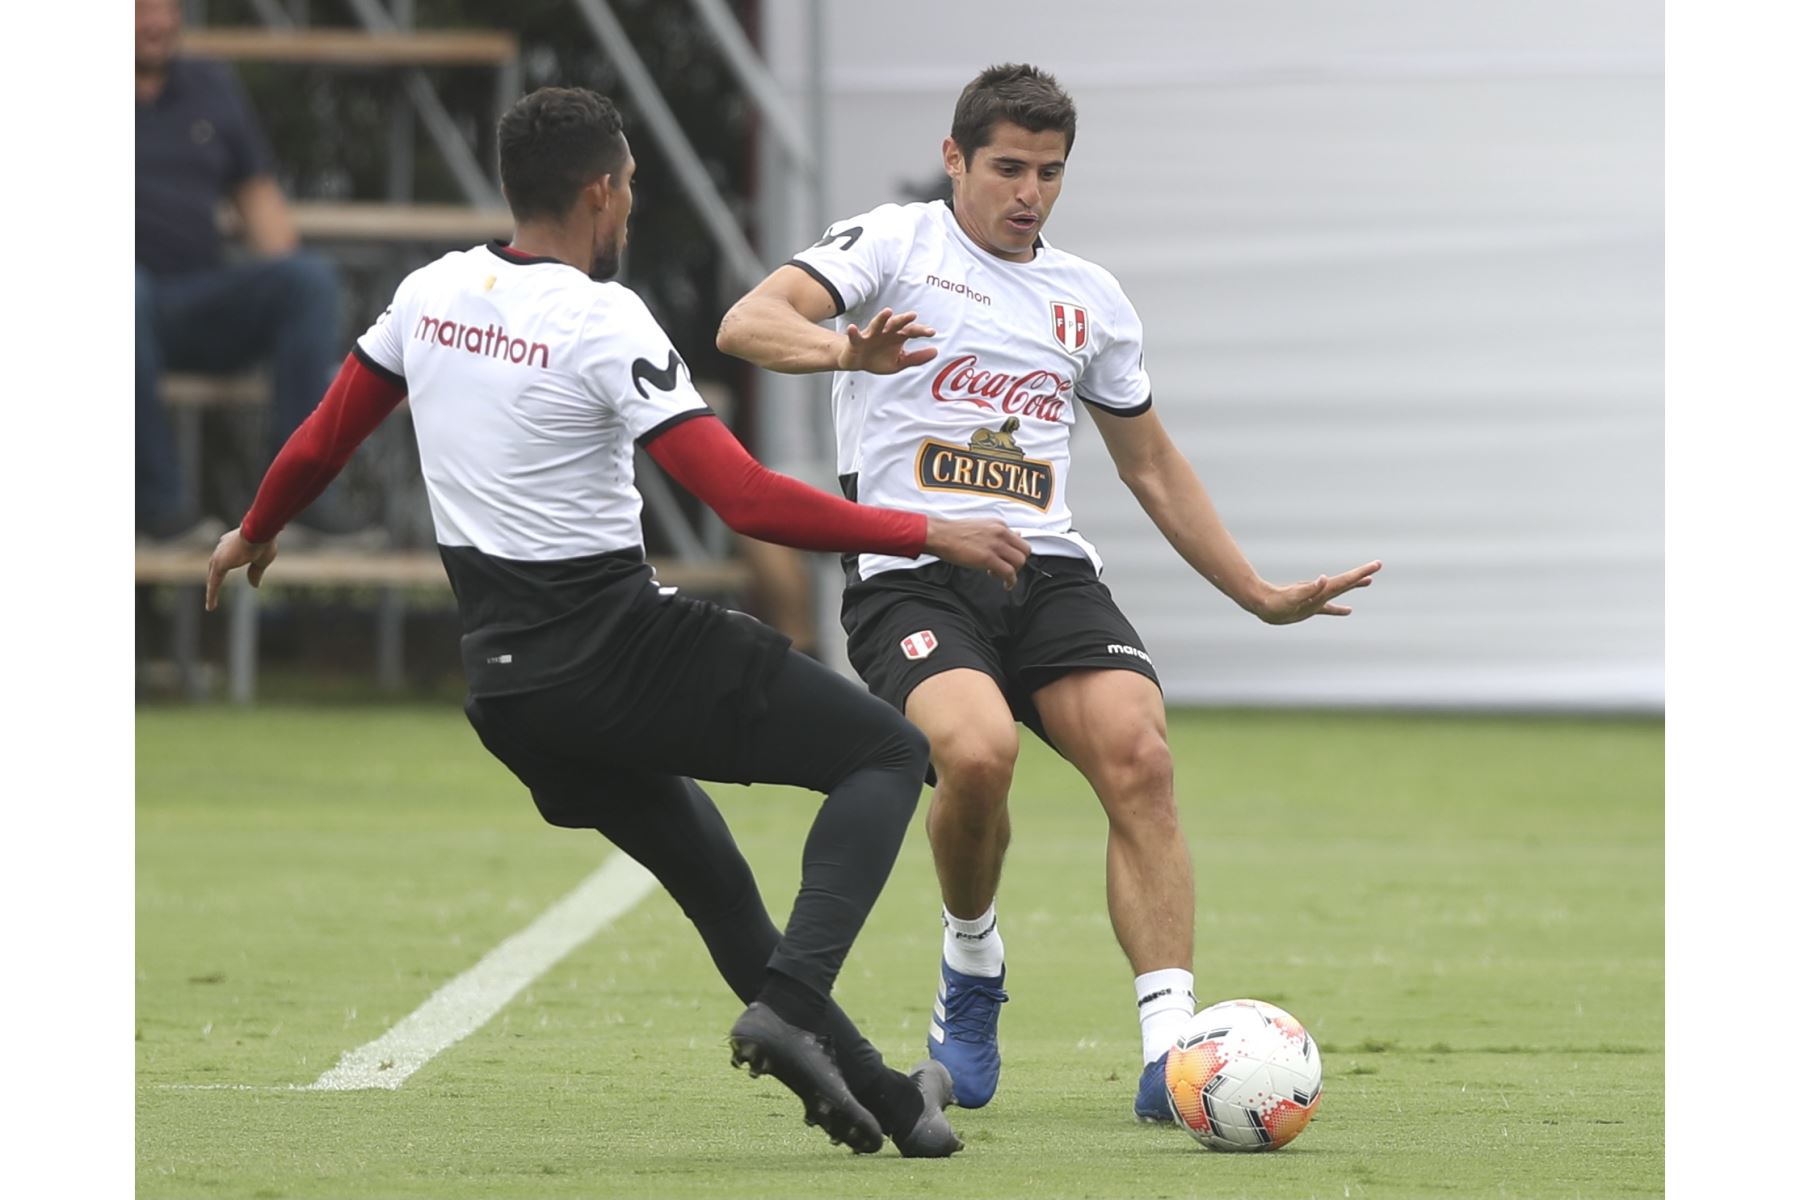 La Selección Peruana entrenó por tercer día para sus partidos contra Chile y Argentina. El entrenamiento se realizó con seleccionados locales en la Videna. Foto: FPF